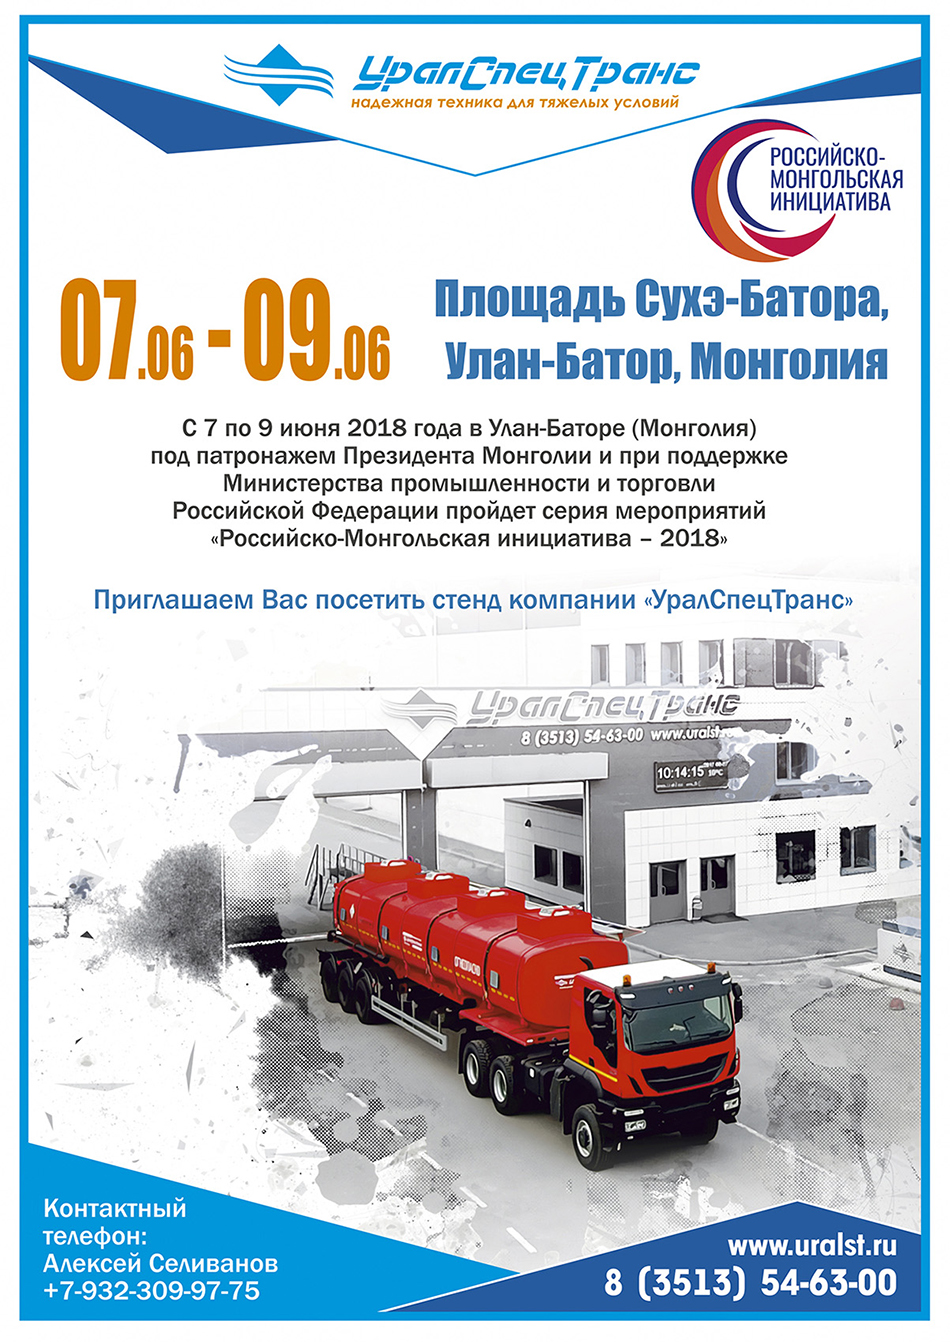 Российско-монгольская инициатива 2018